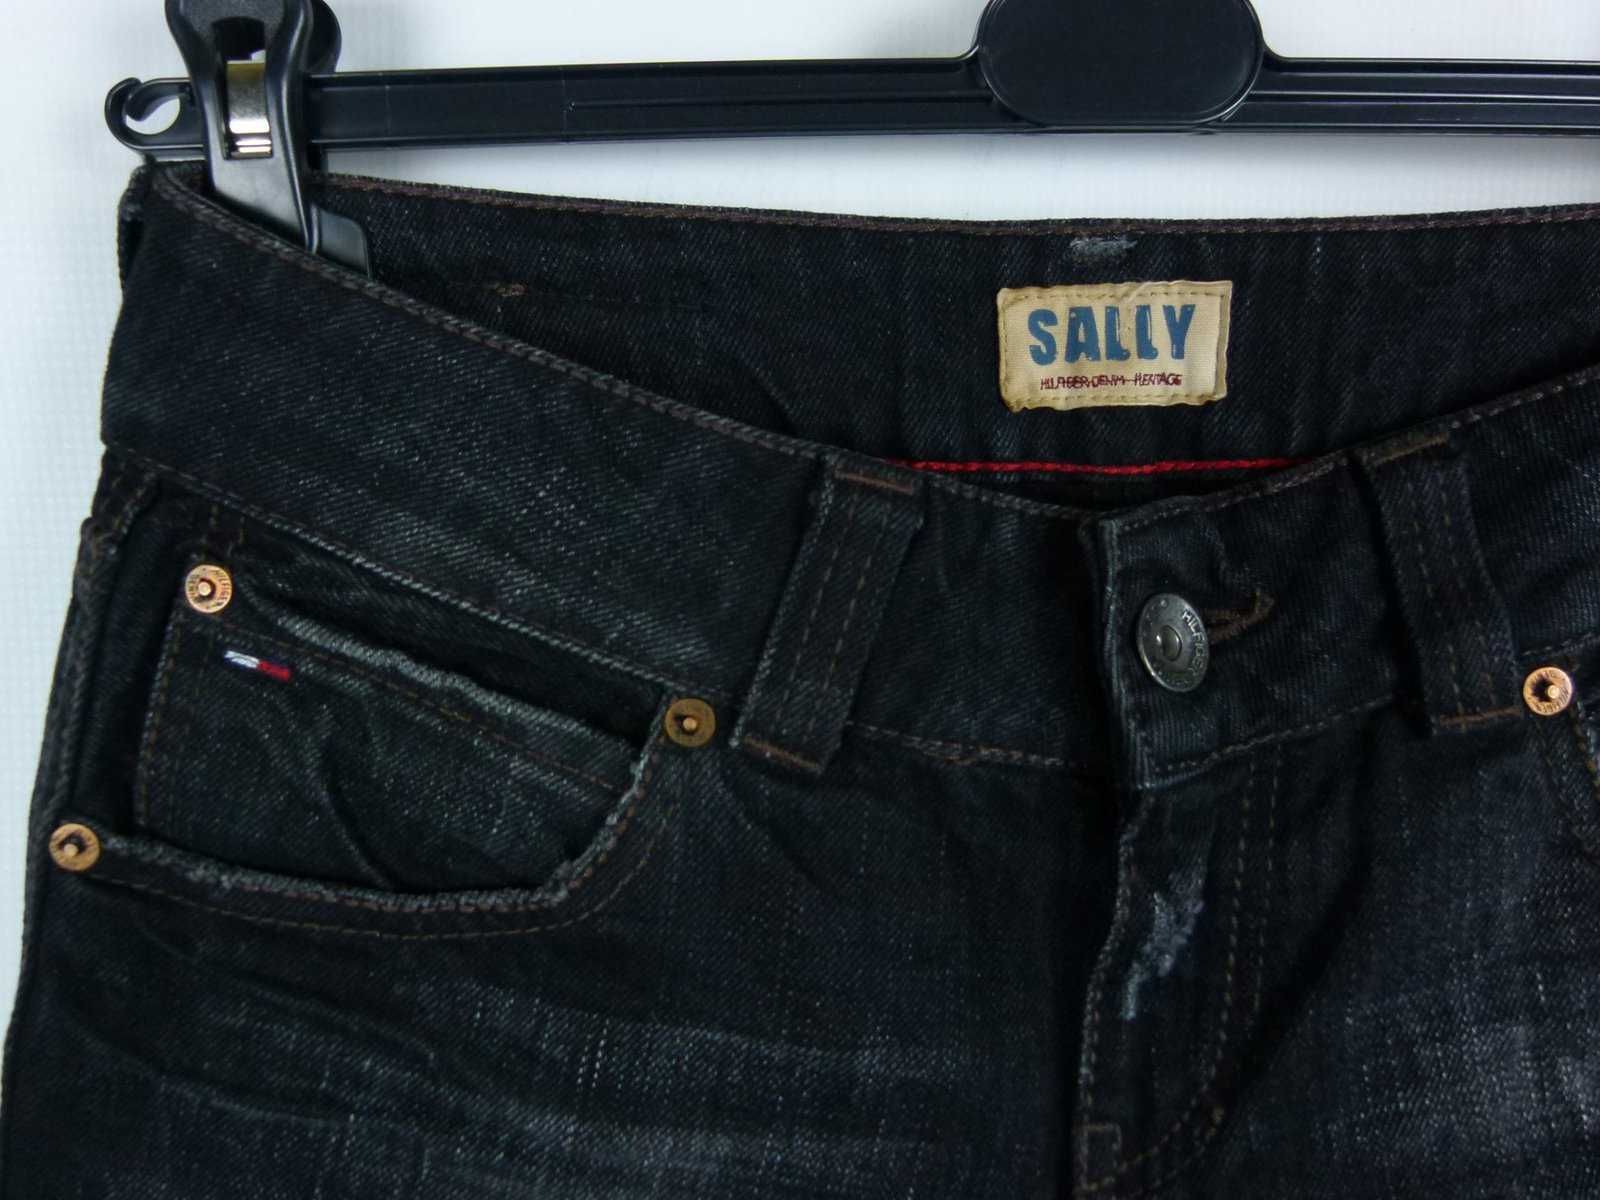 Tommy Hilfiger Sally damskie spodnie jeans 27 / 32